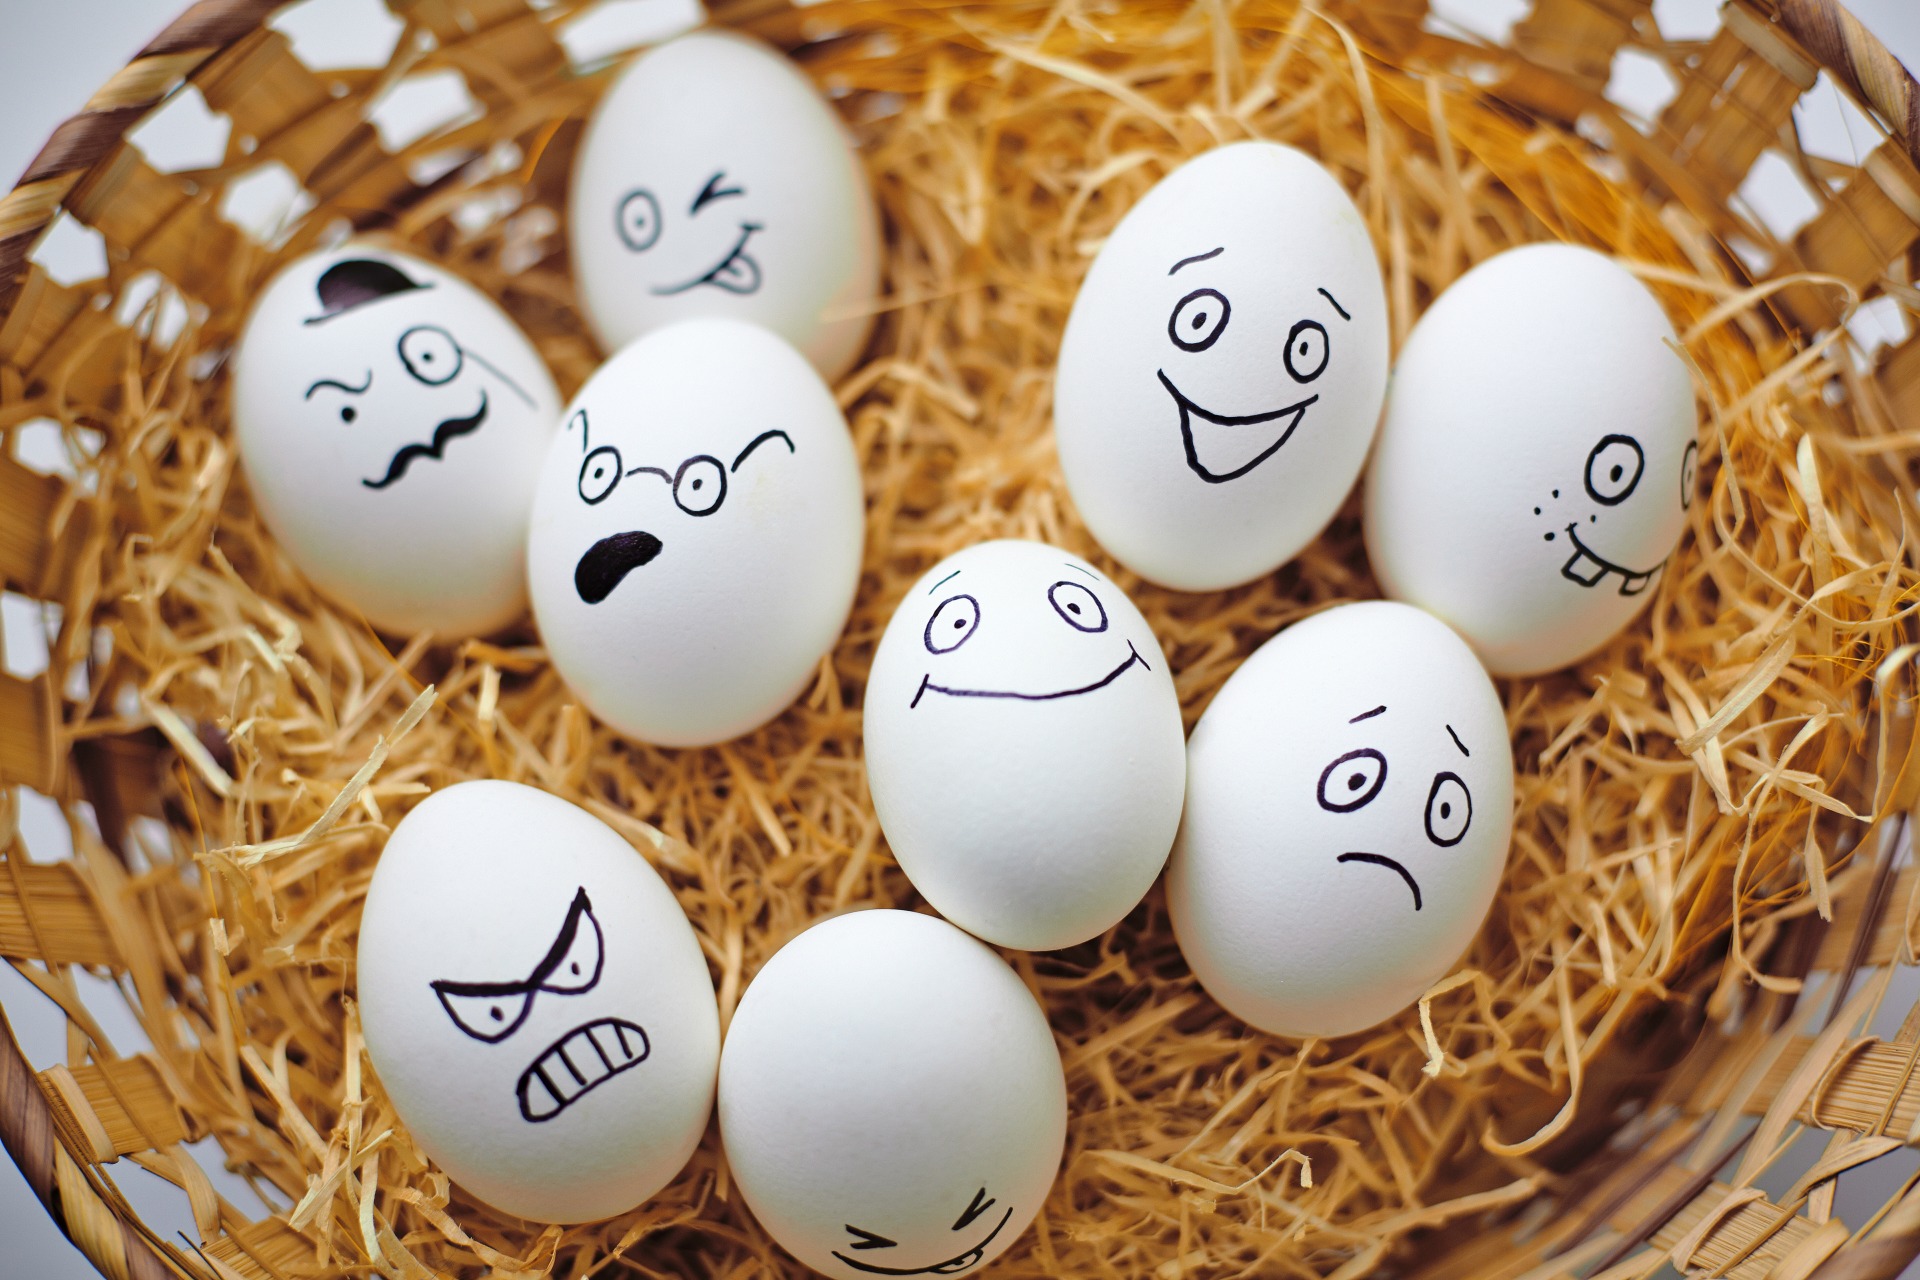 10 интересных фактов о яйцах